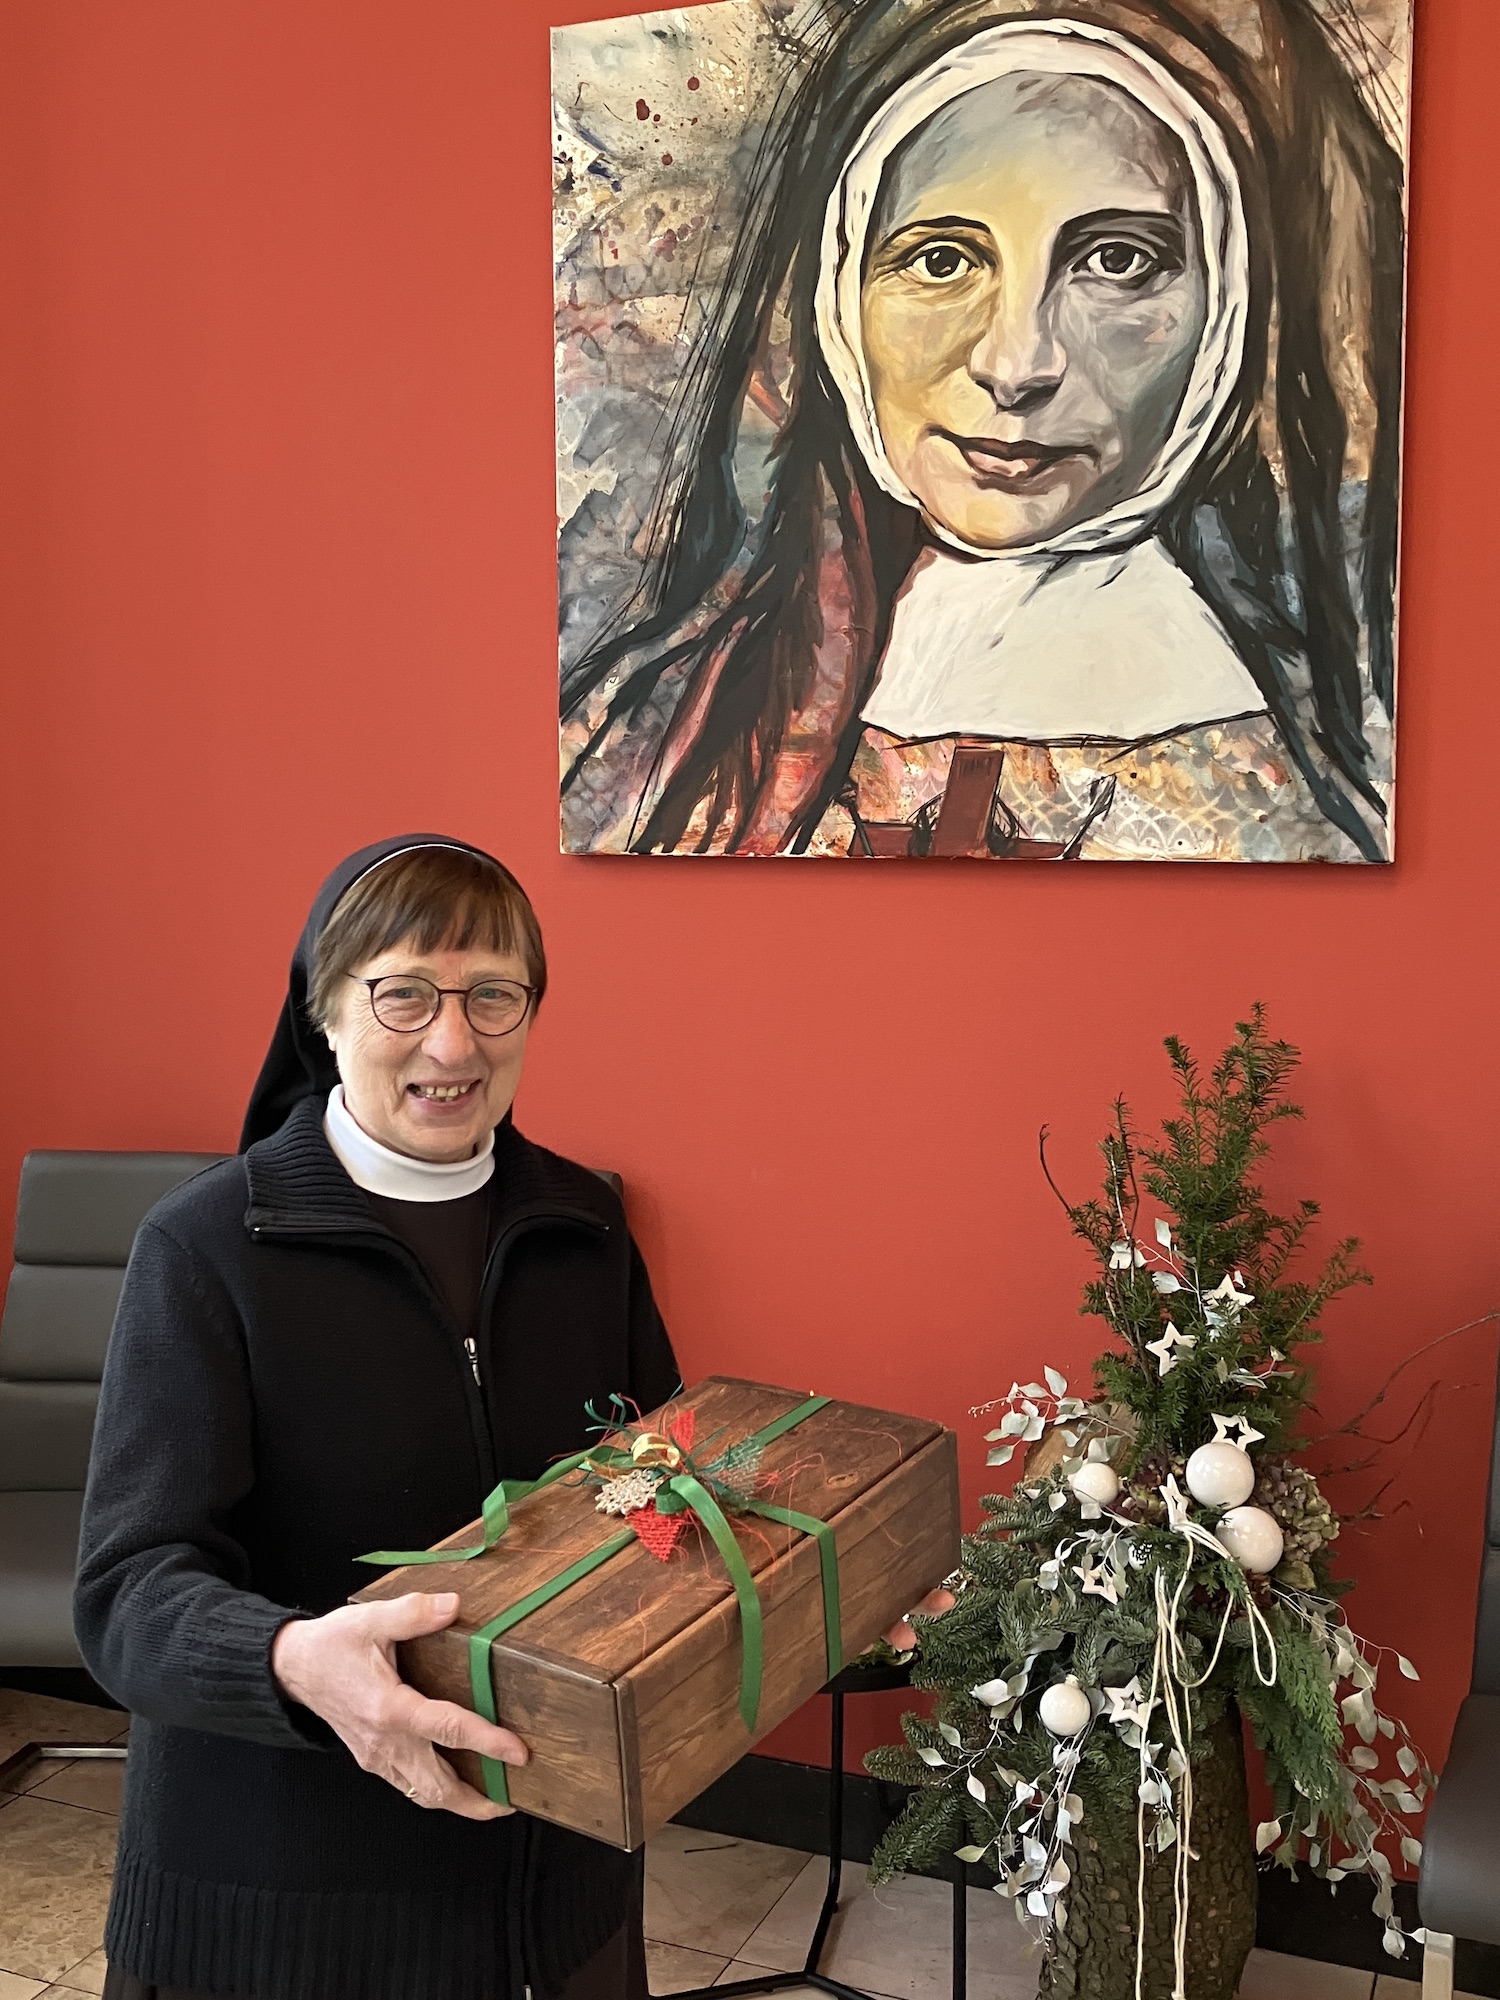 Ganz im Sinne von Franziska Schervier (Porträt) packen die Schwestern Pakete für Bedürftige. (c) Andrea Thomas